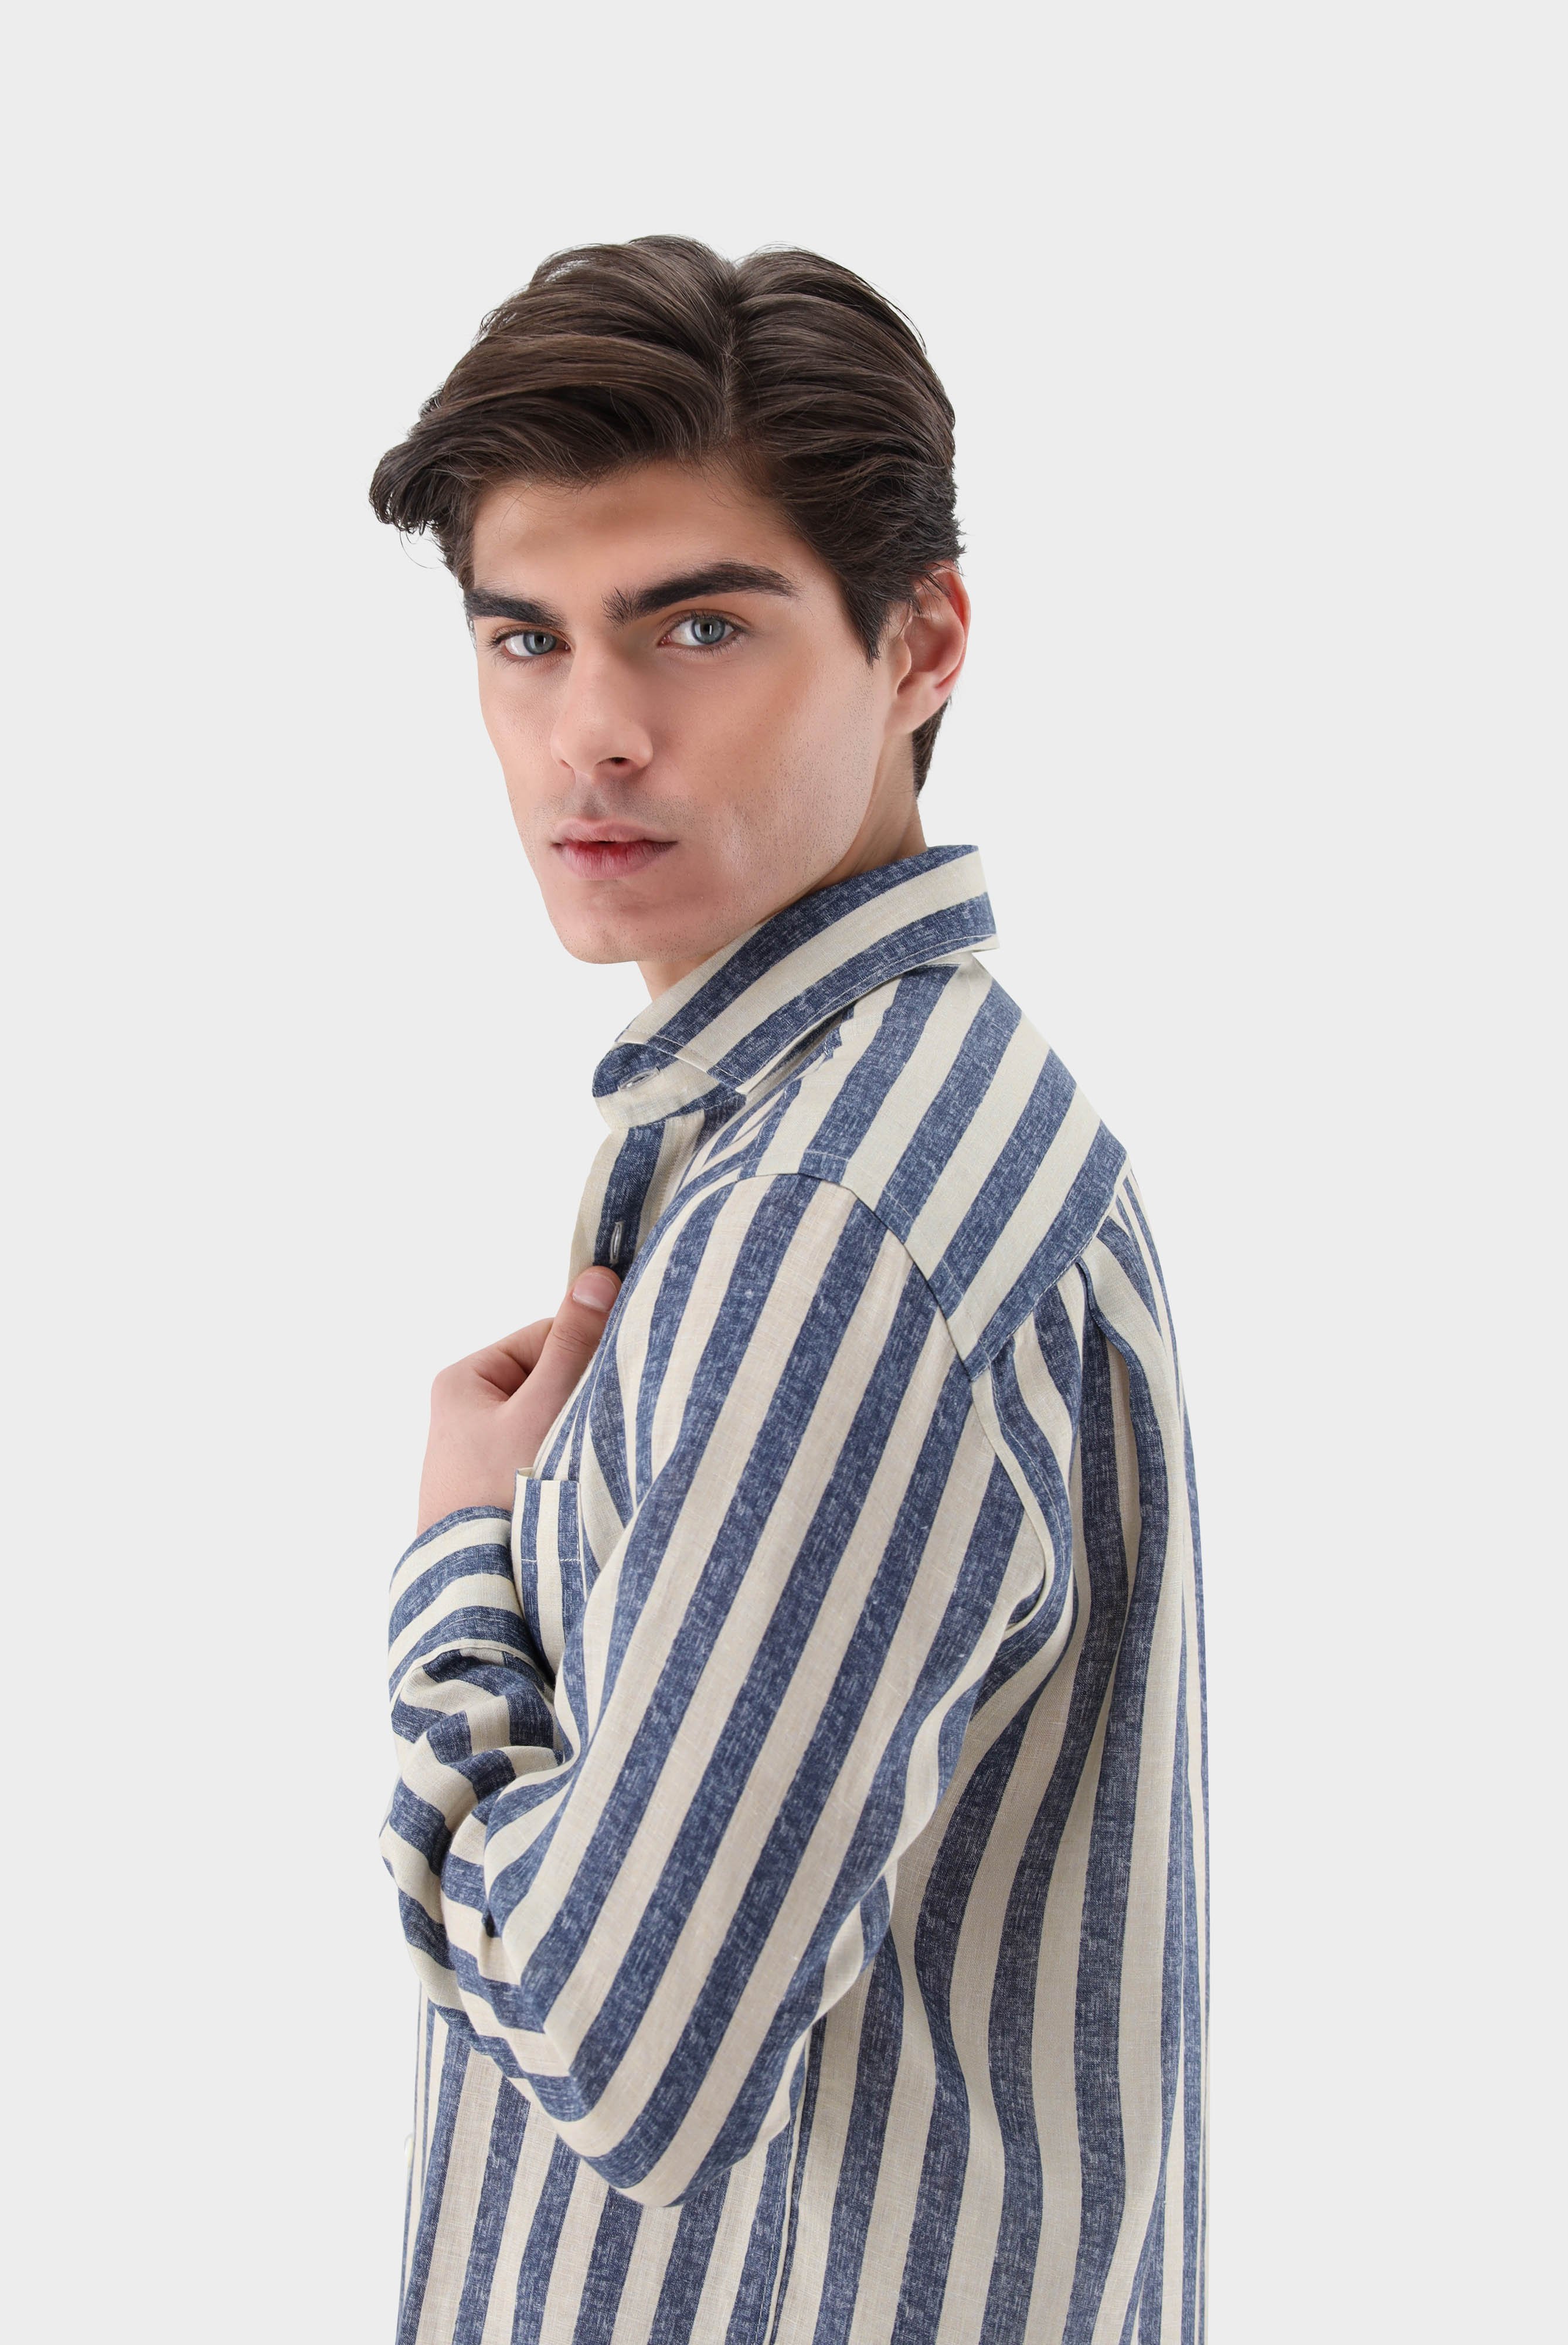 Casual Hemden+Leinenhemd mit breiten Streifen Comfort Fit+20.2021.9V.170356.761.40